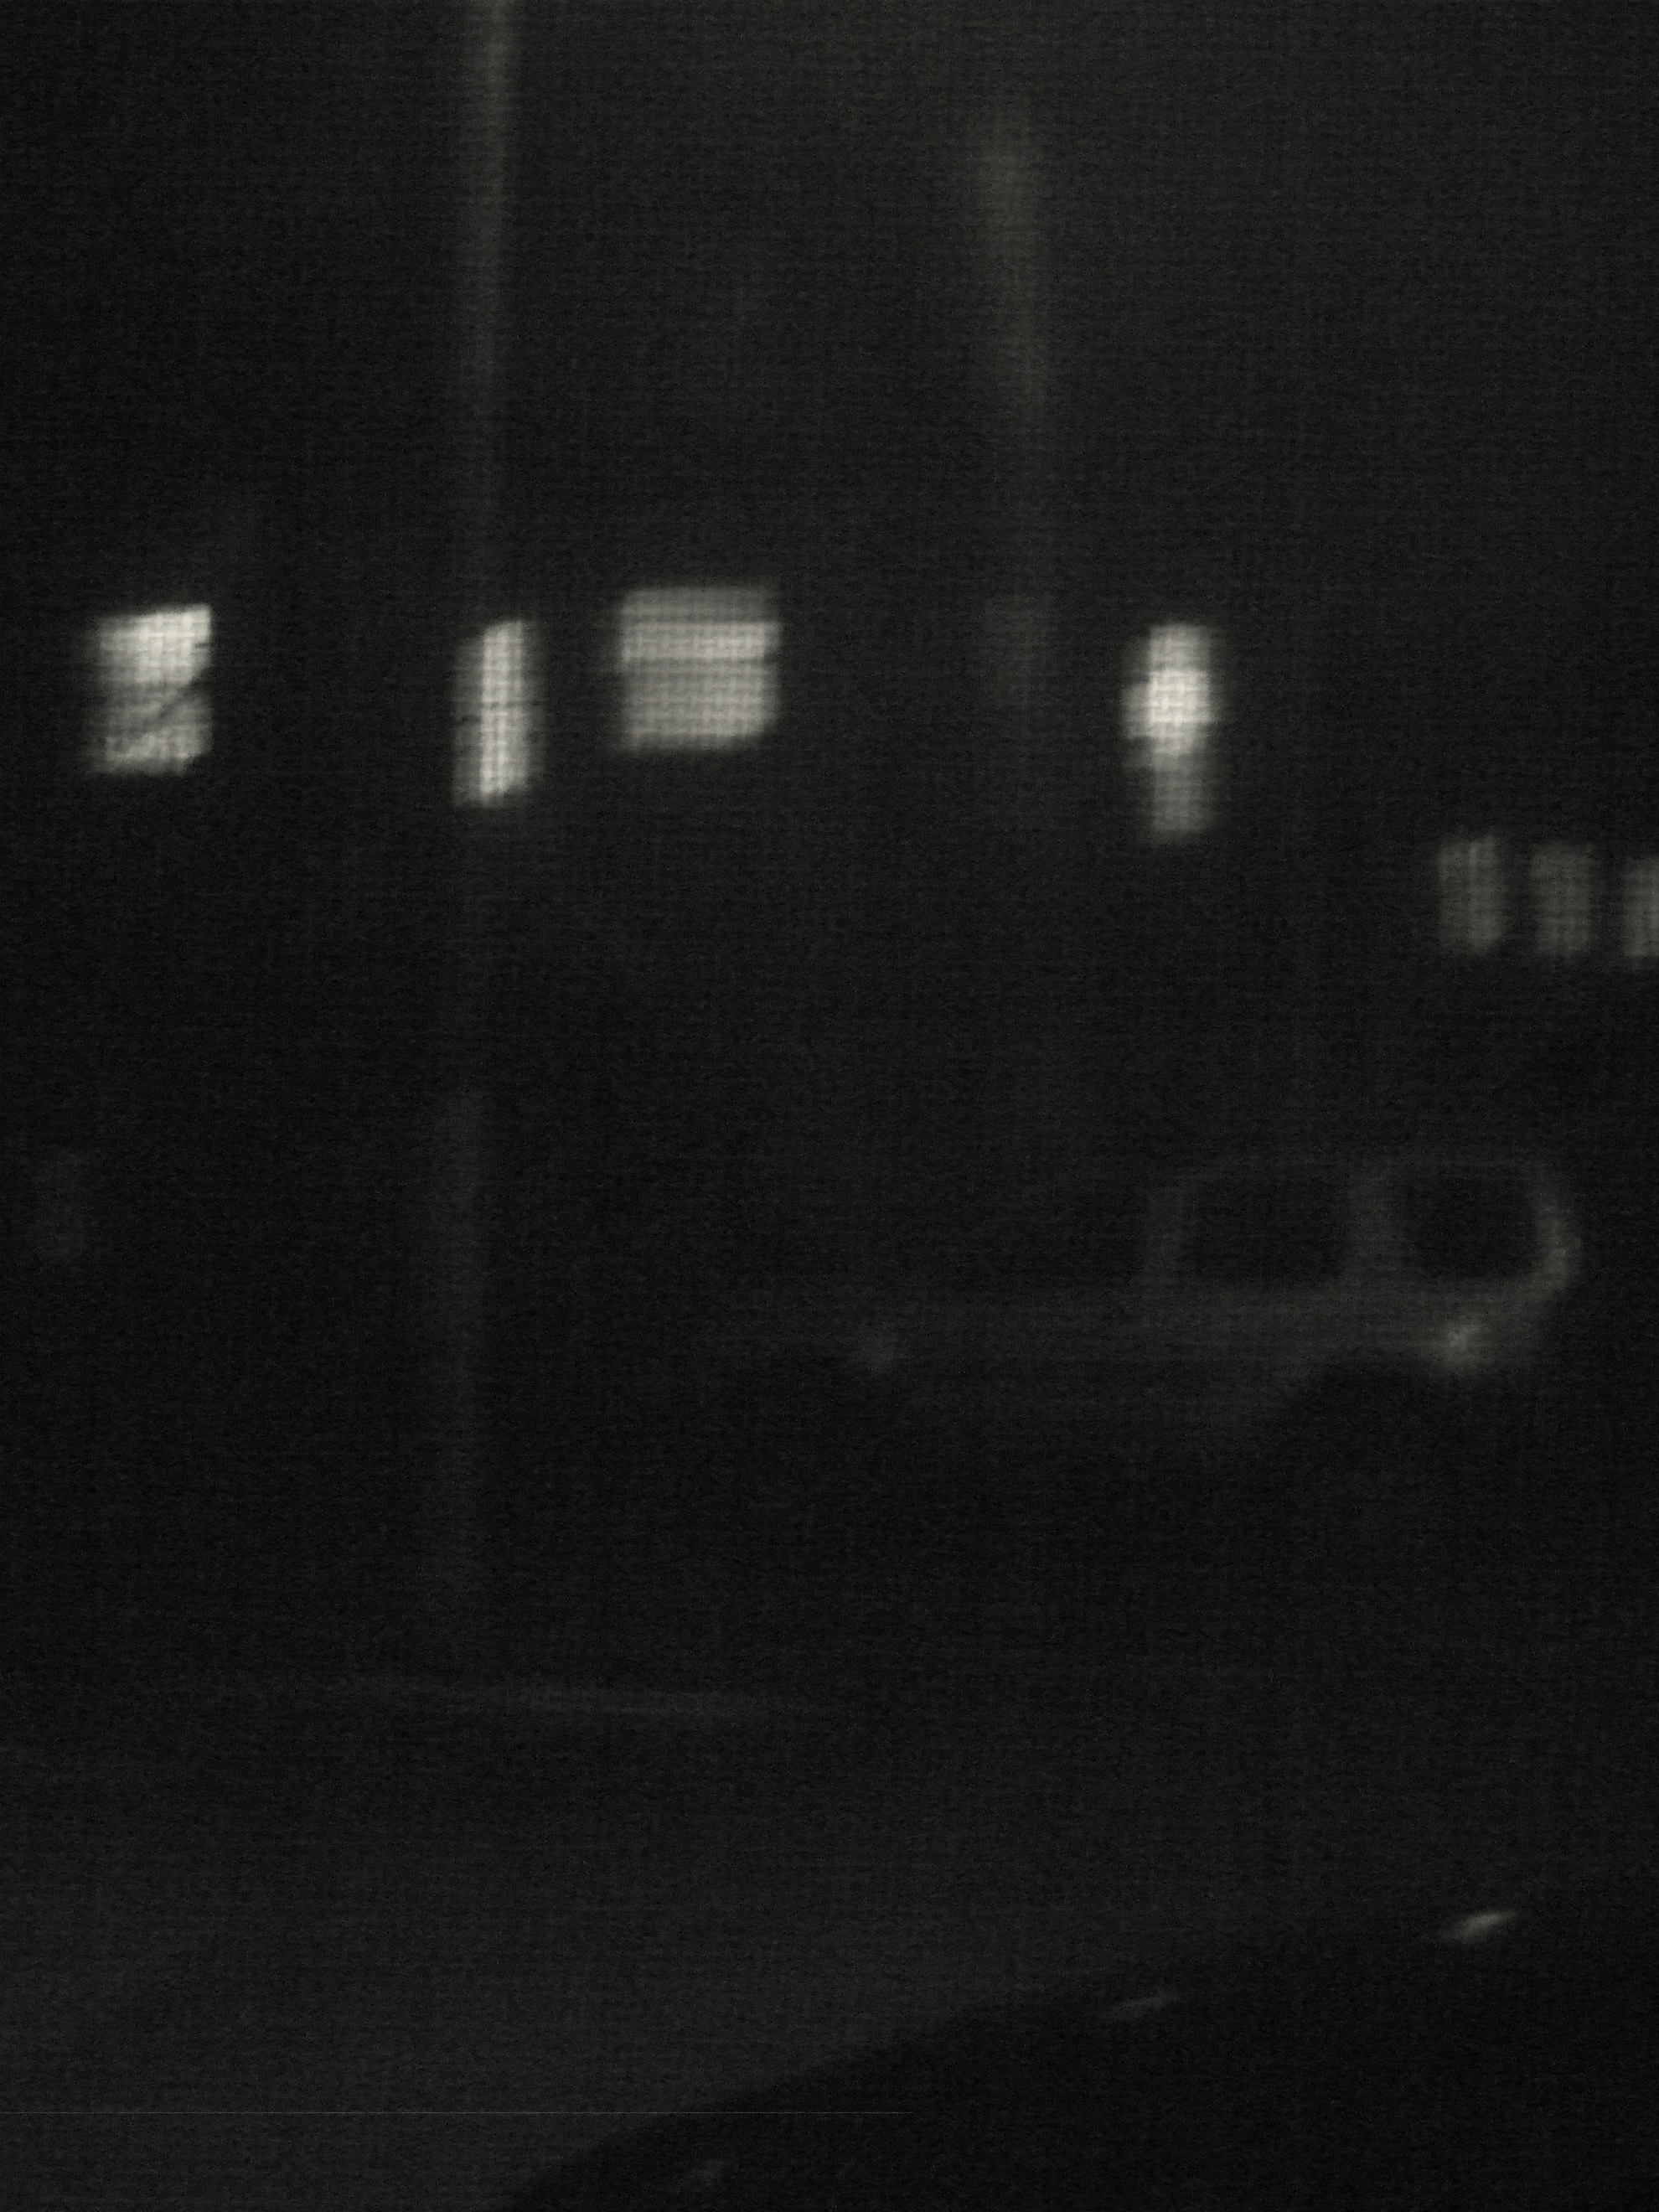 Car in the Night 3 feb 10